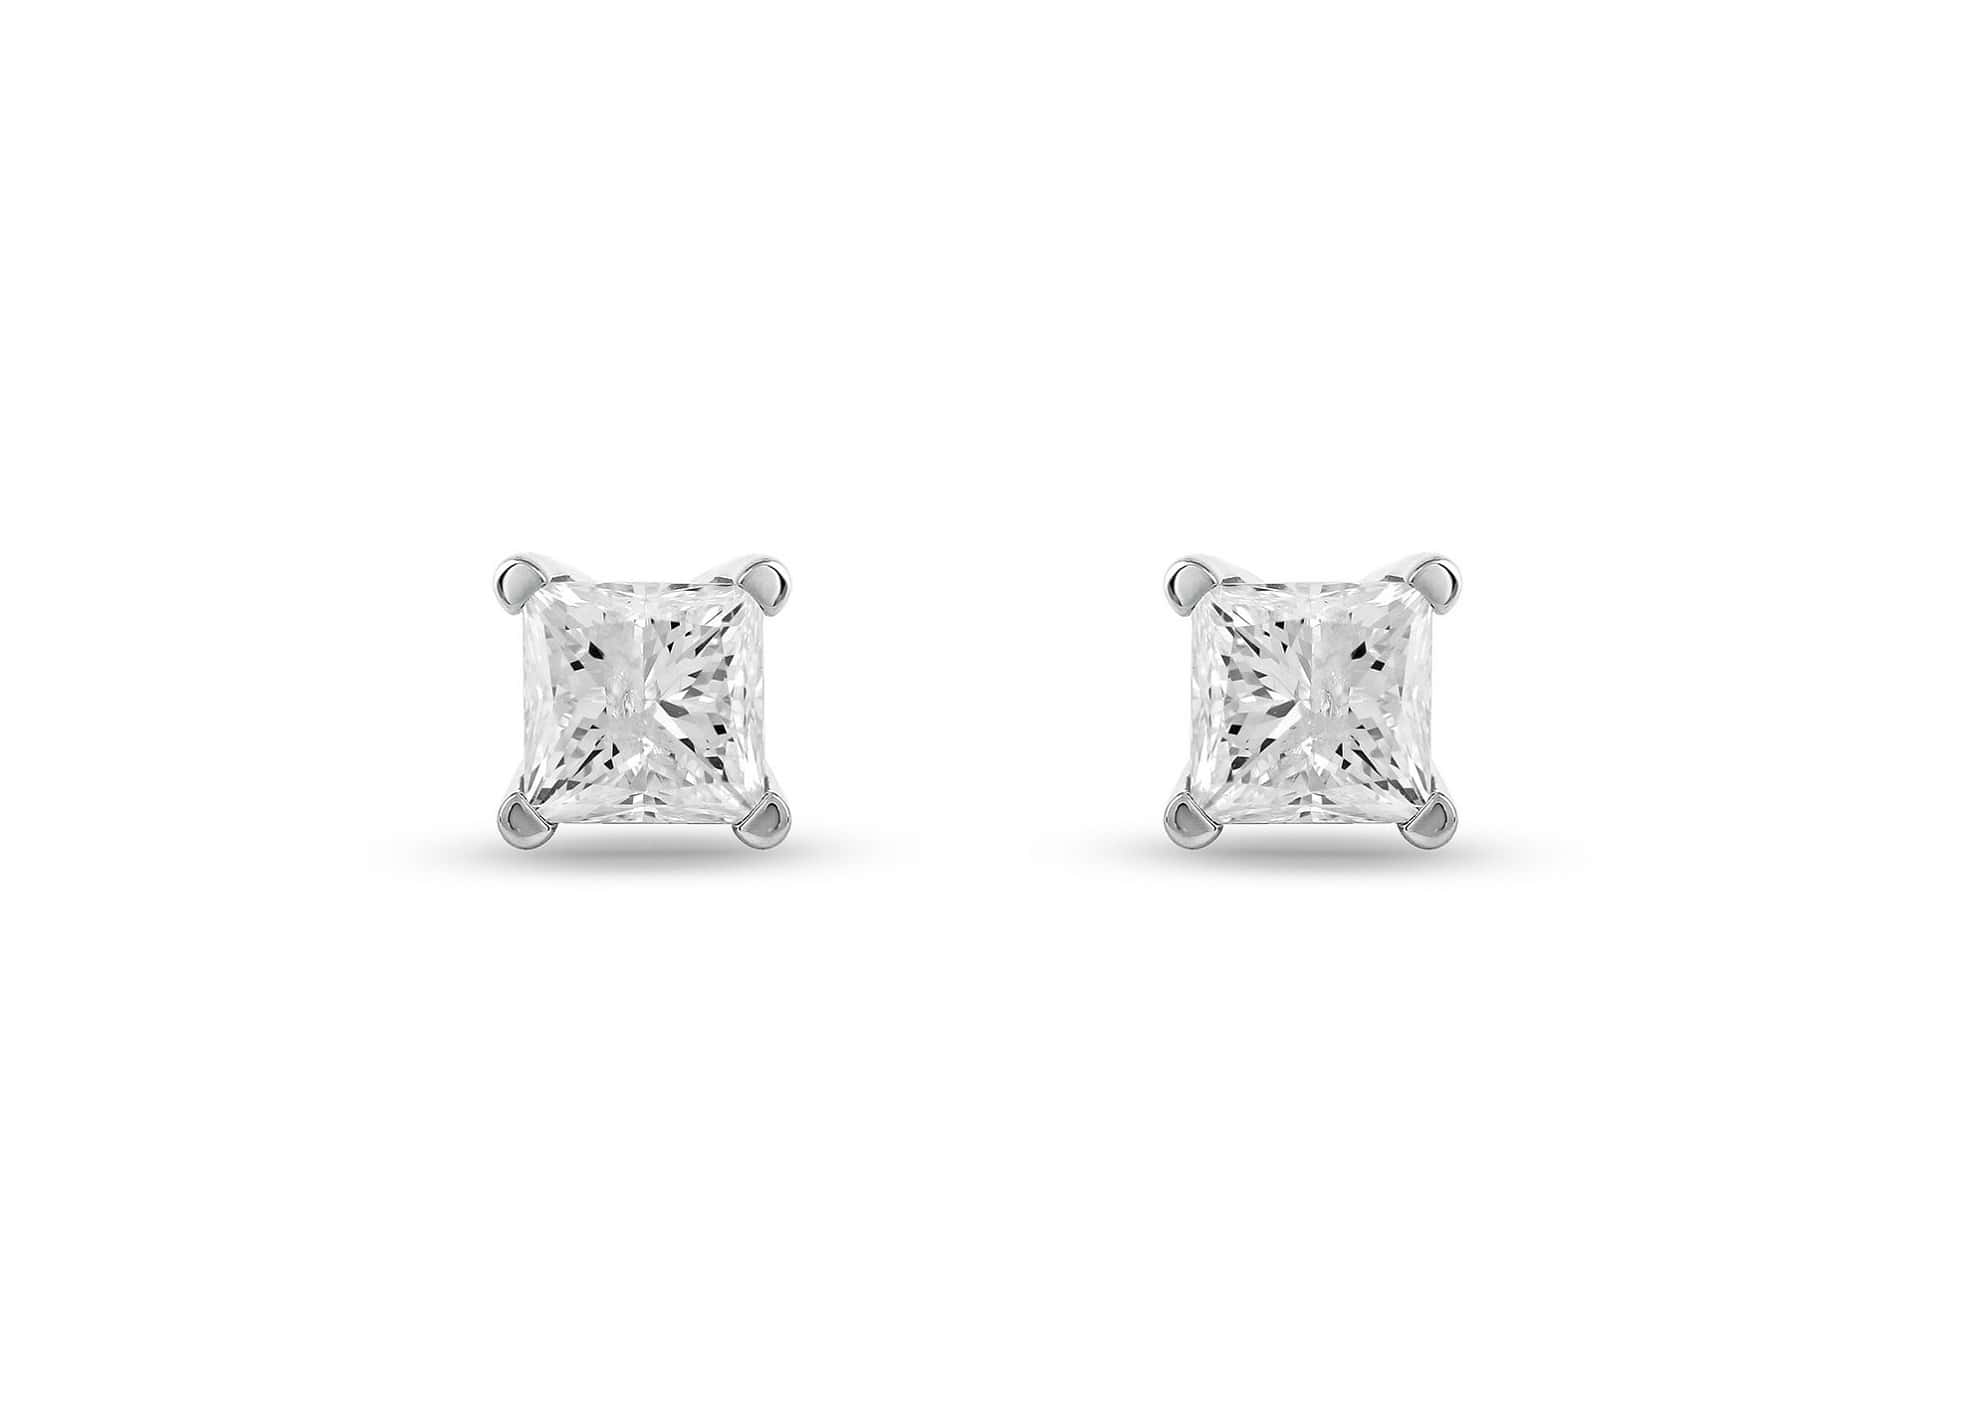 1 Carat Princess Cut Diamond Stud Earrings